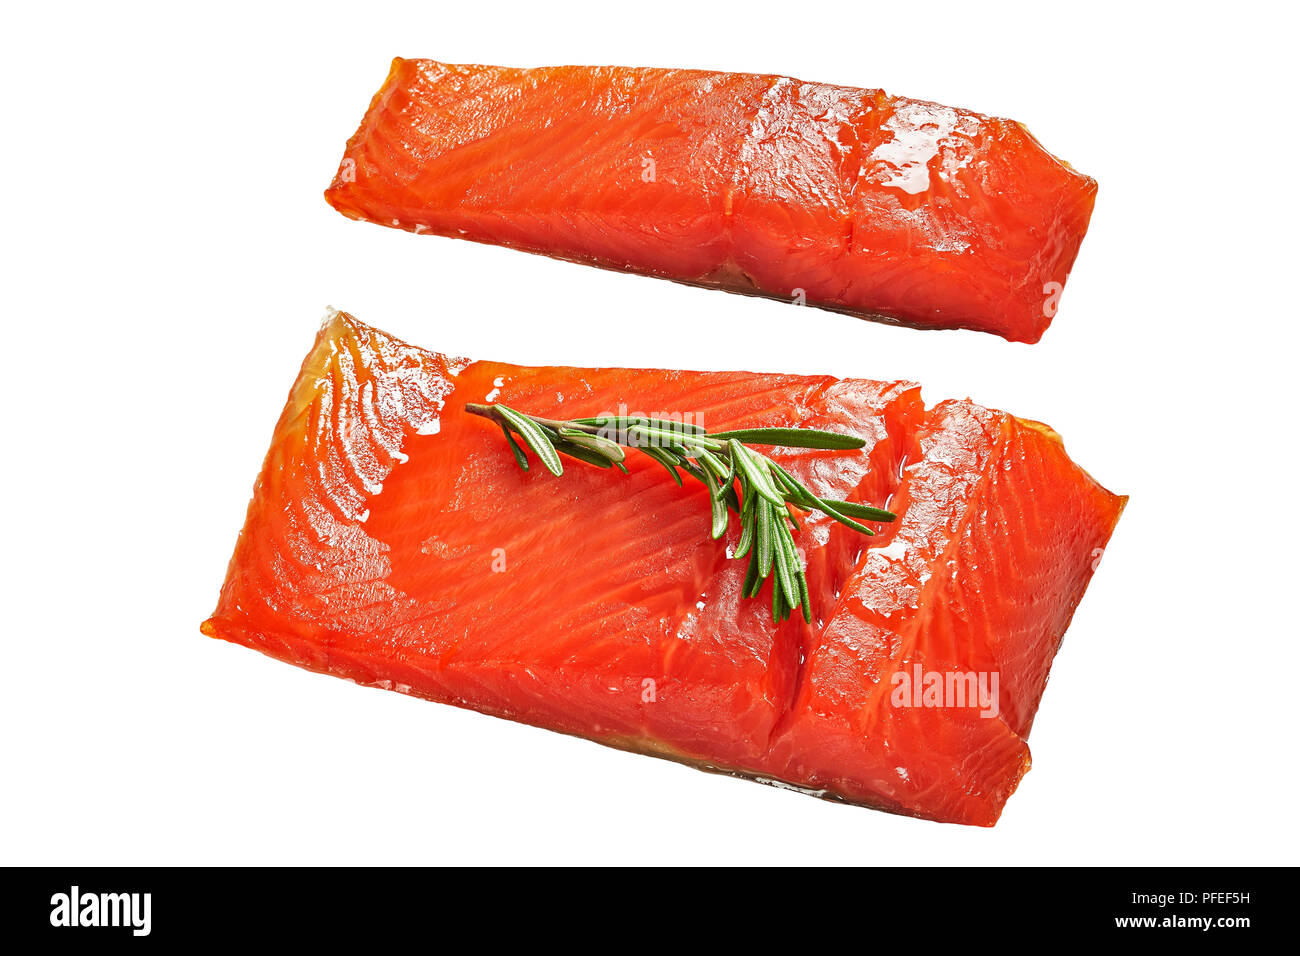 Due pezzi di salmone filetto di pesce con rosmarino fresco isolato su sfondo bianco, vista da sopra, close-up Foto Stock